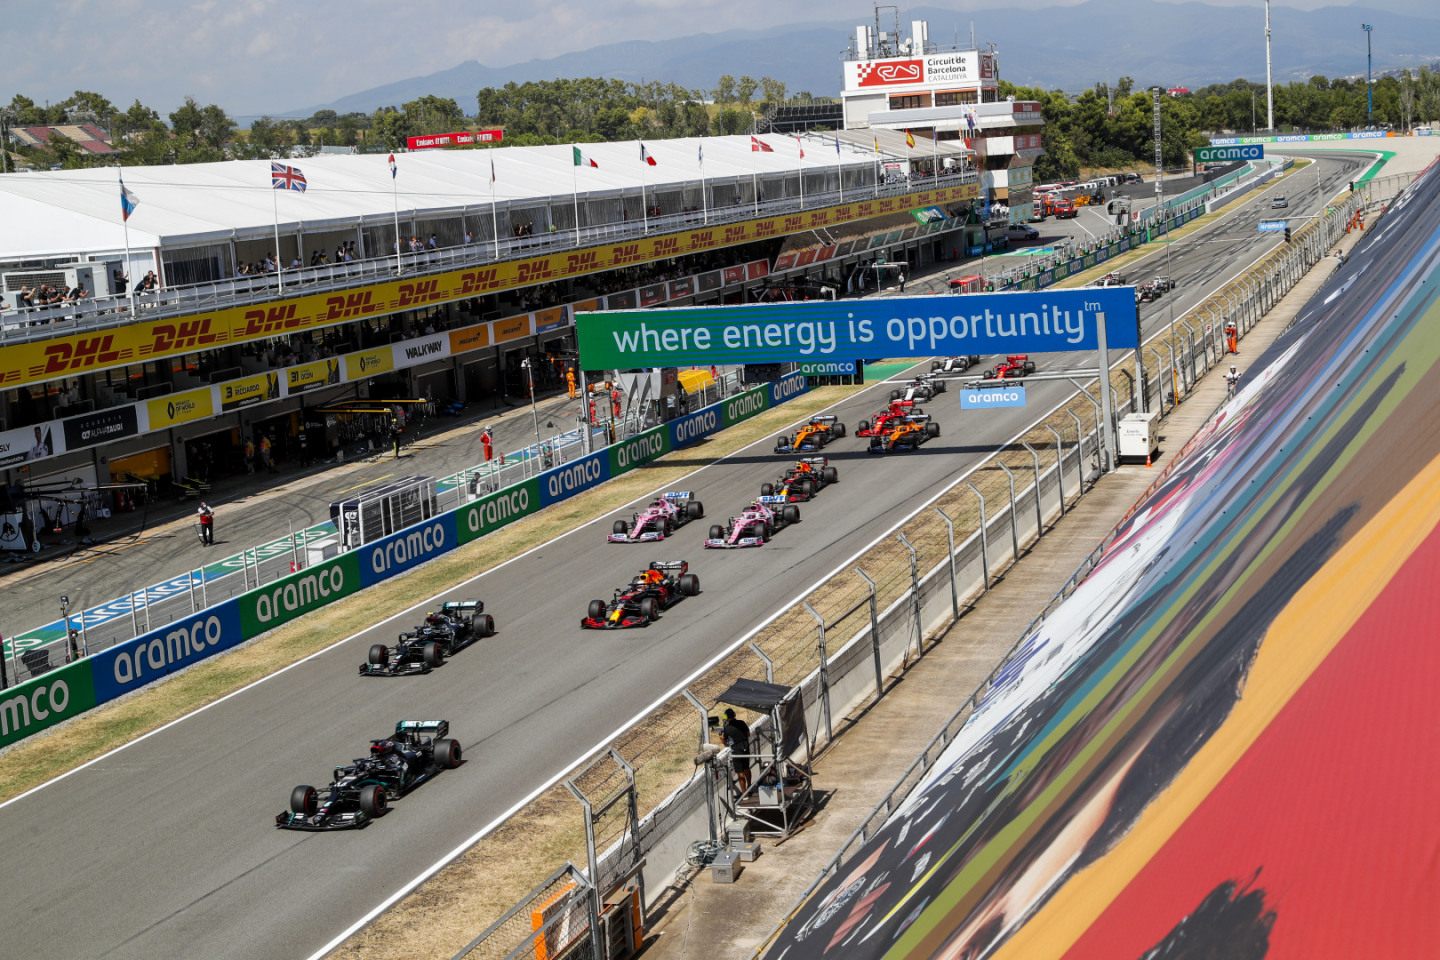 В сезоне-2021 спринтерские гонки пройдут в качестве экспримента © Mercedes AMG F1 / LAT Images